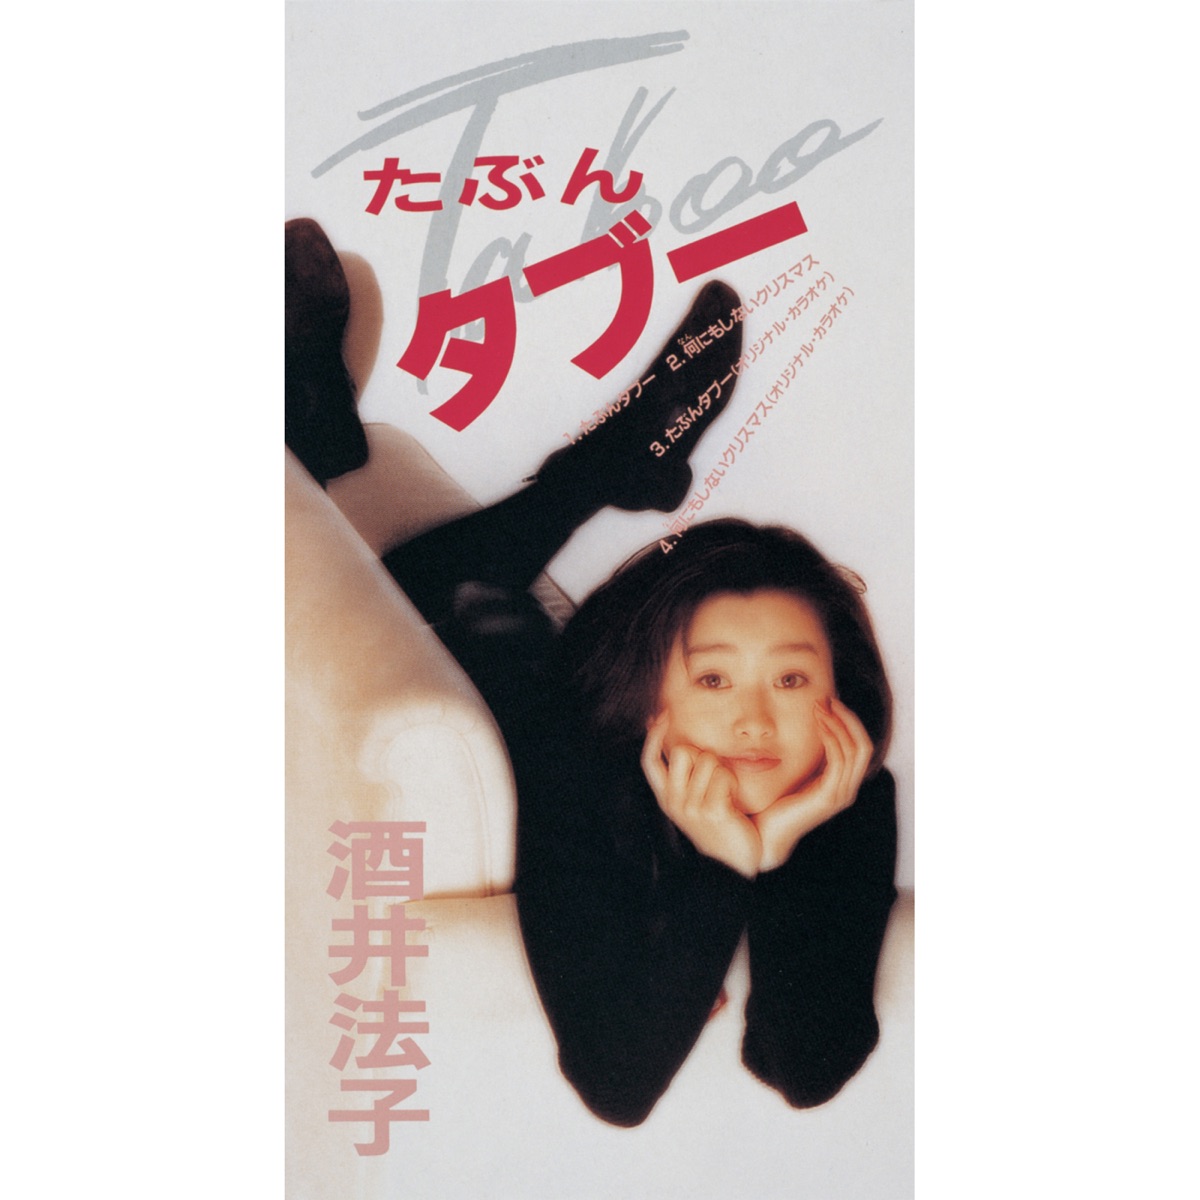 酒井法子 - たぶんタブー - EP (1992) [iTunes Plus AAC M4A]-新房子